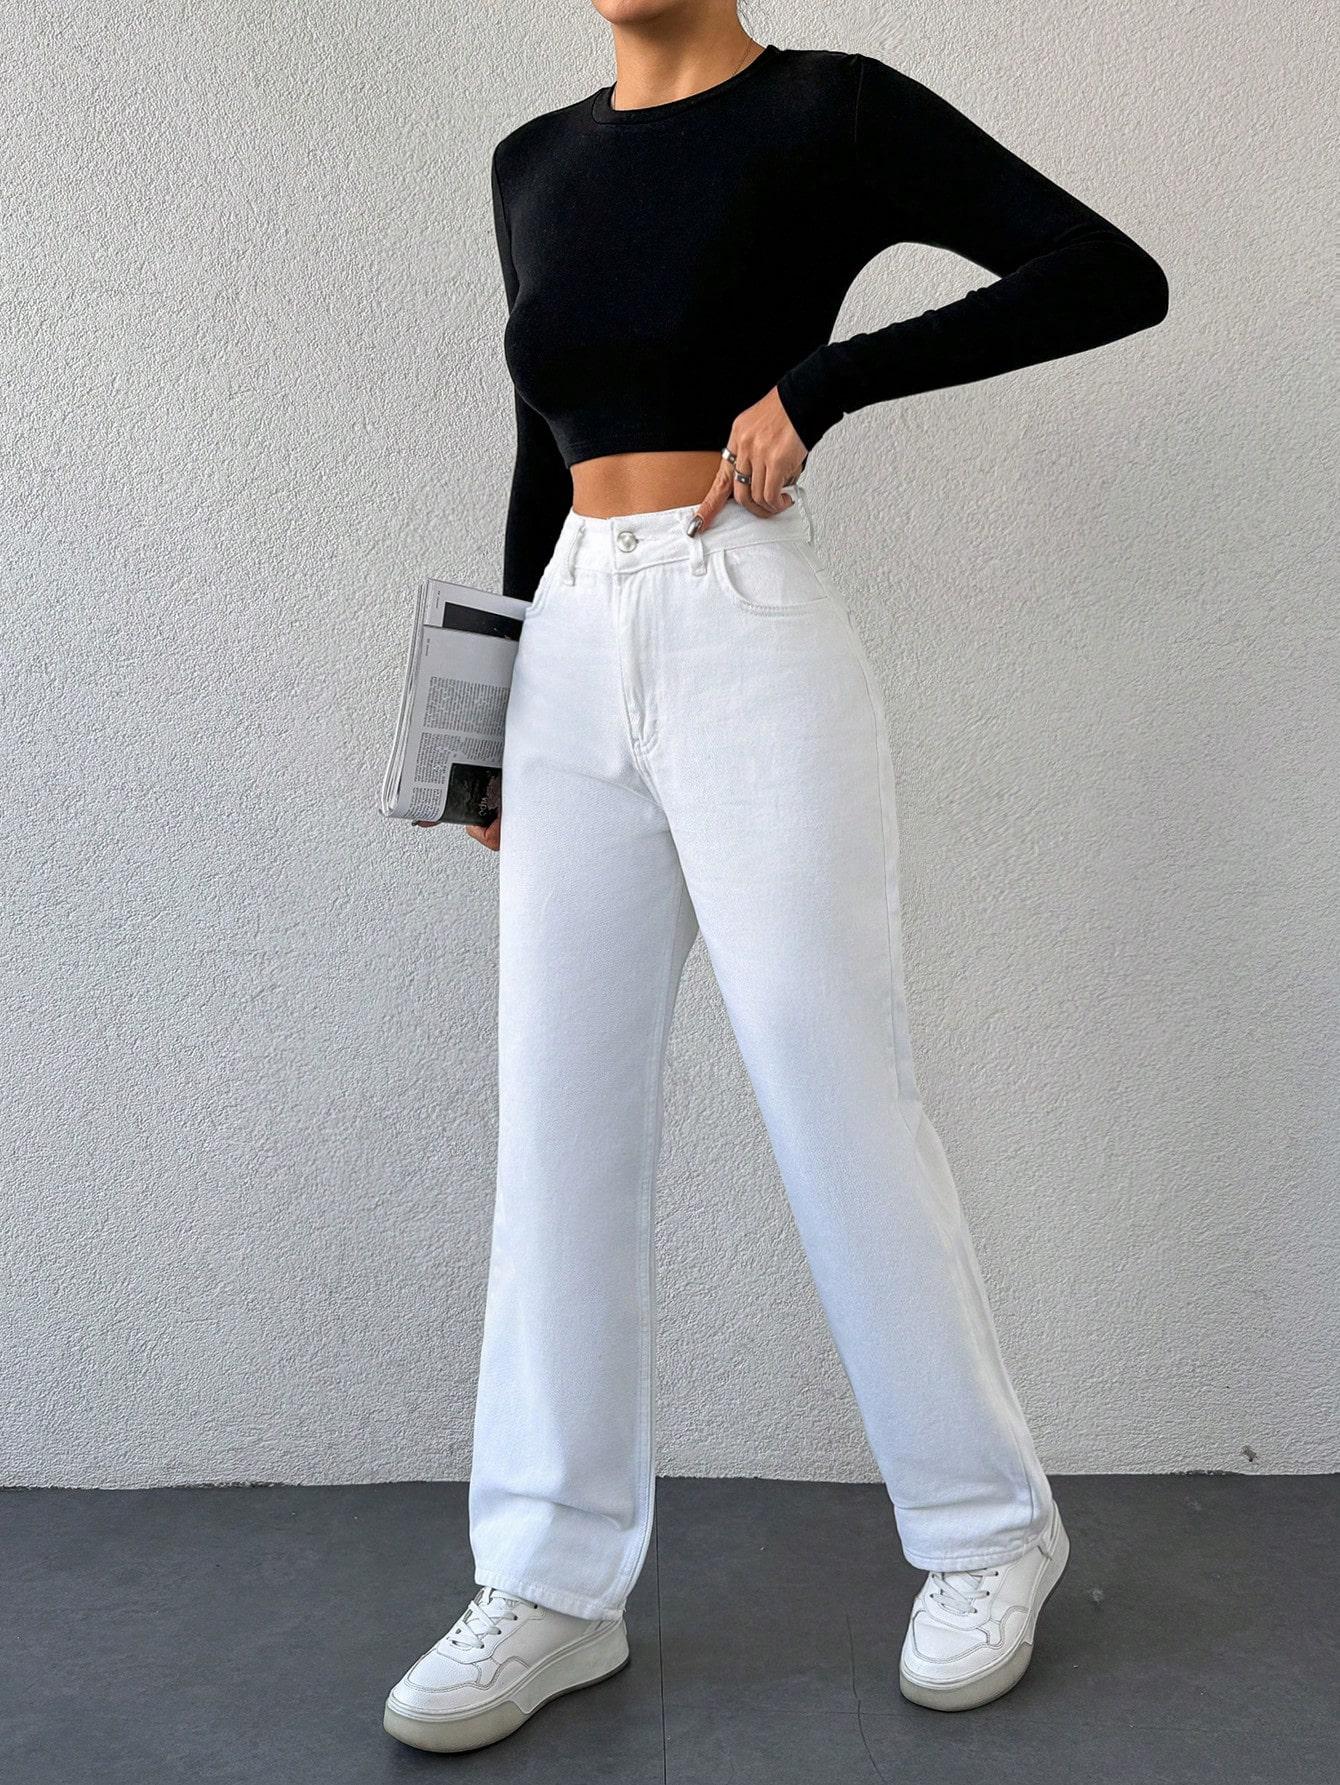  białe spodnie jeans wysoki stan 